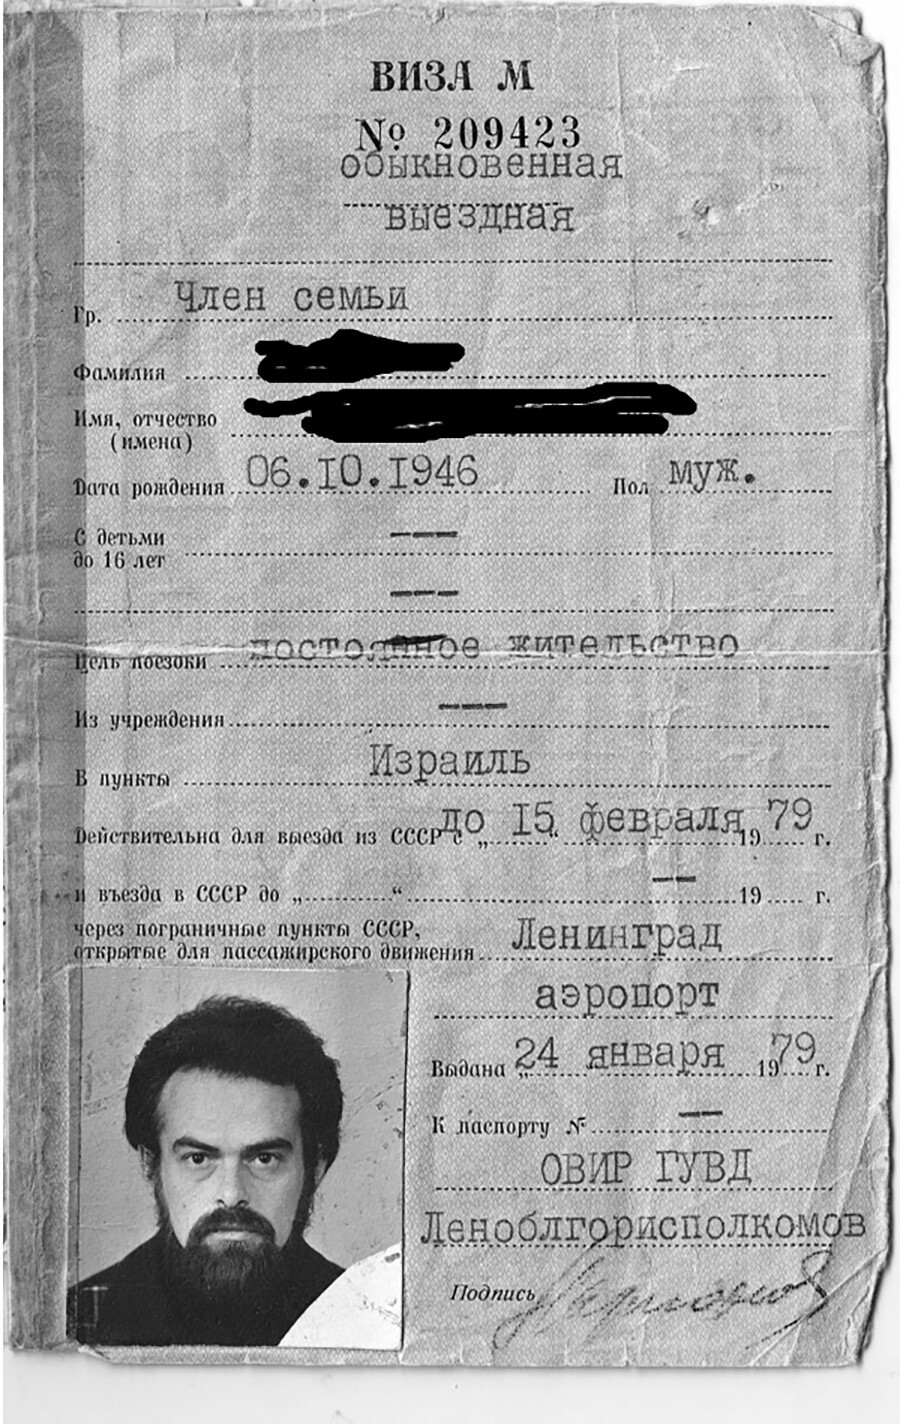 Совјетска виза која је дозвољавала грађанину да заувек напусти државу